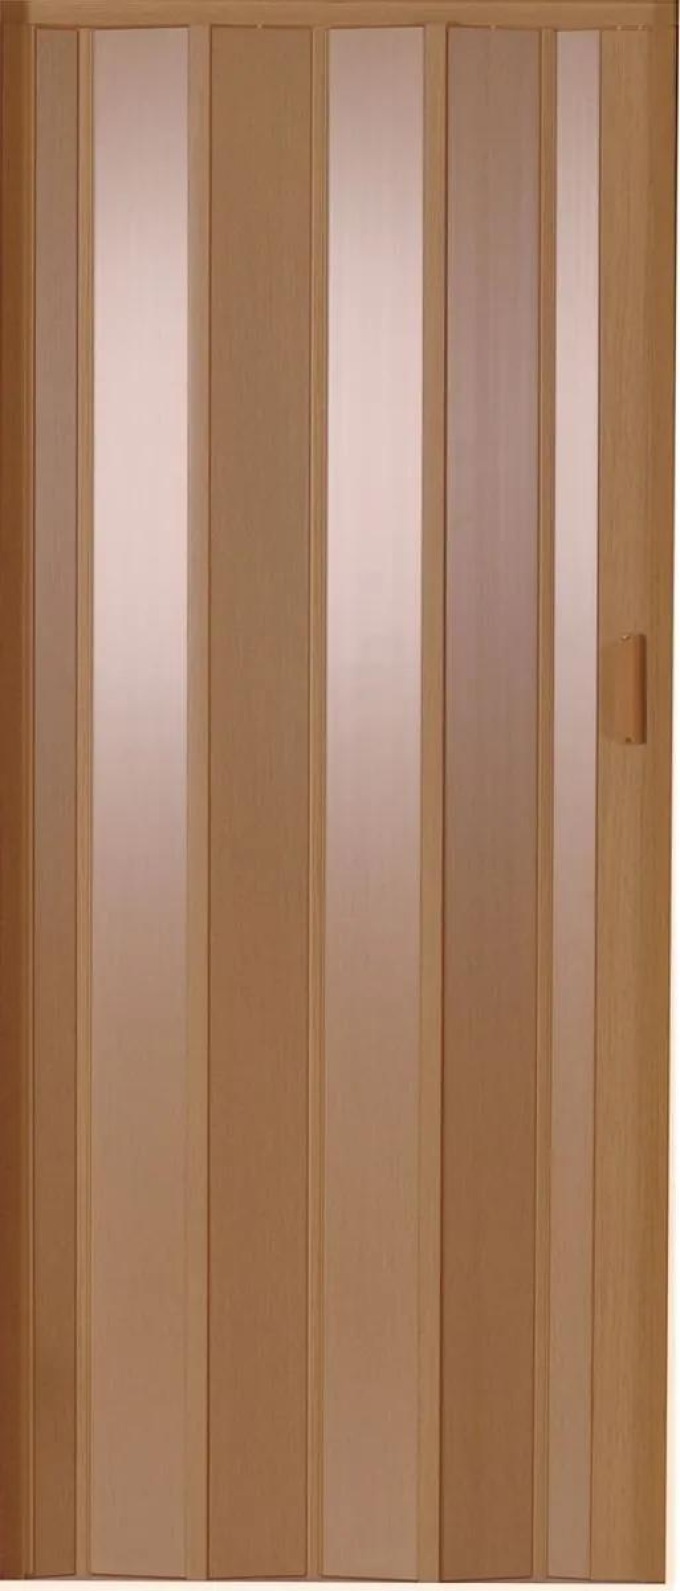 Luciana Shrnovací dveře, 730 × 2000 mm, buk světlý, plné